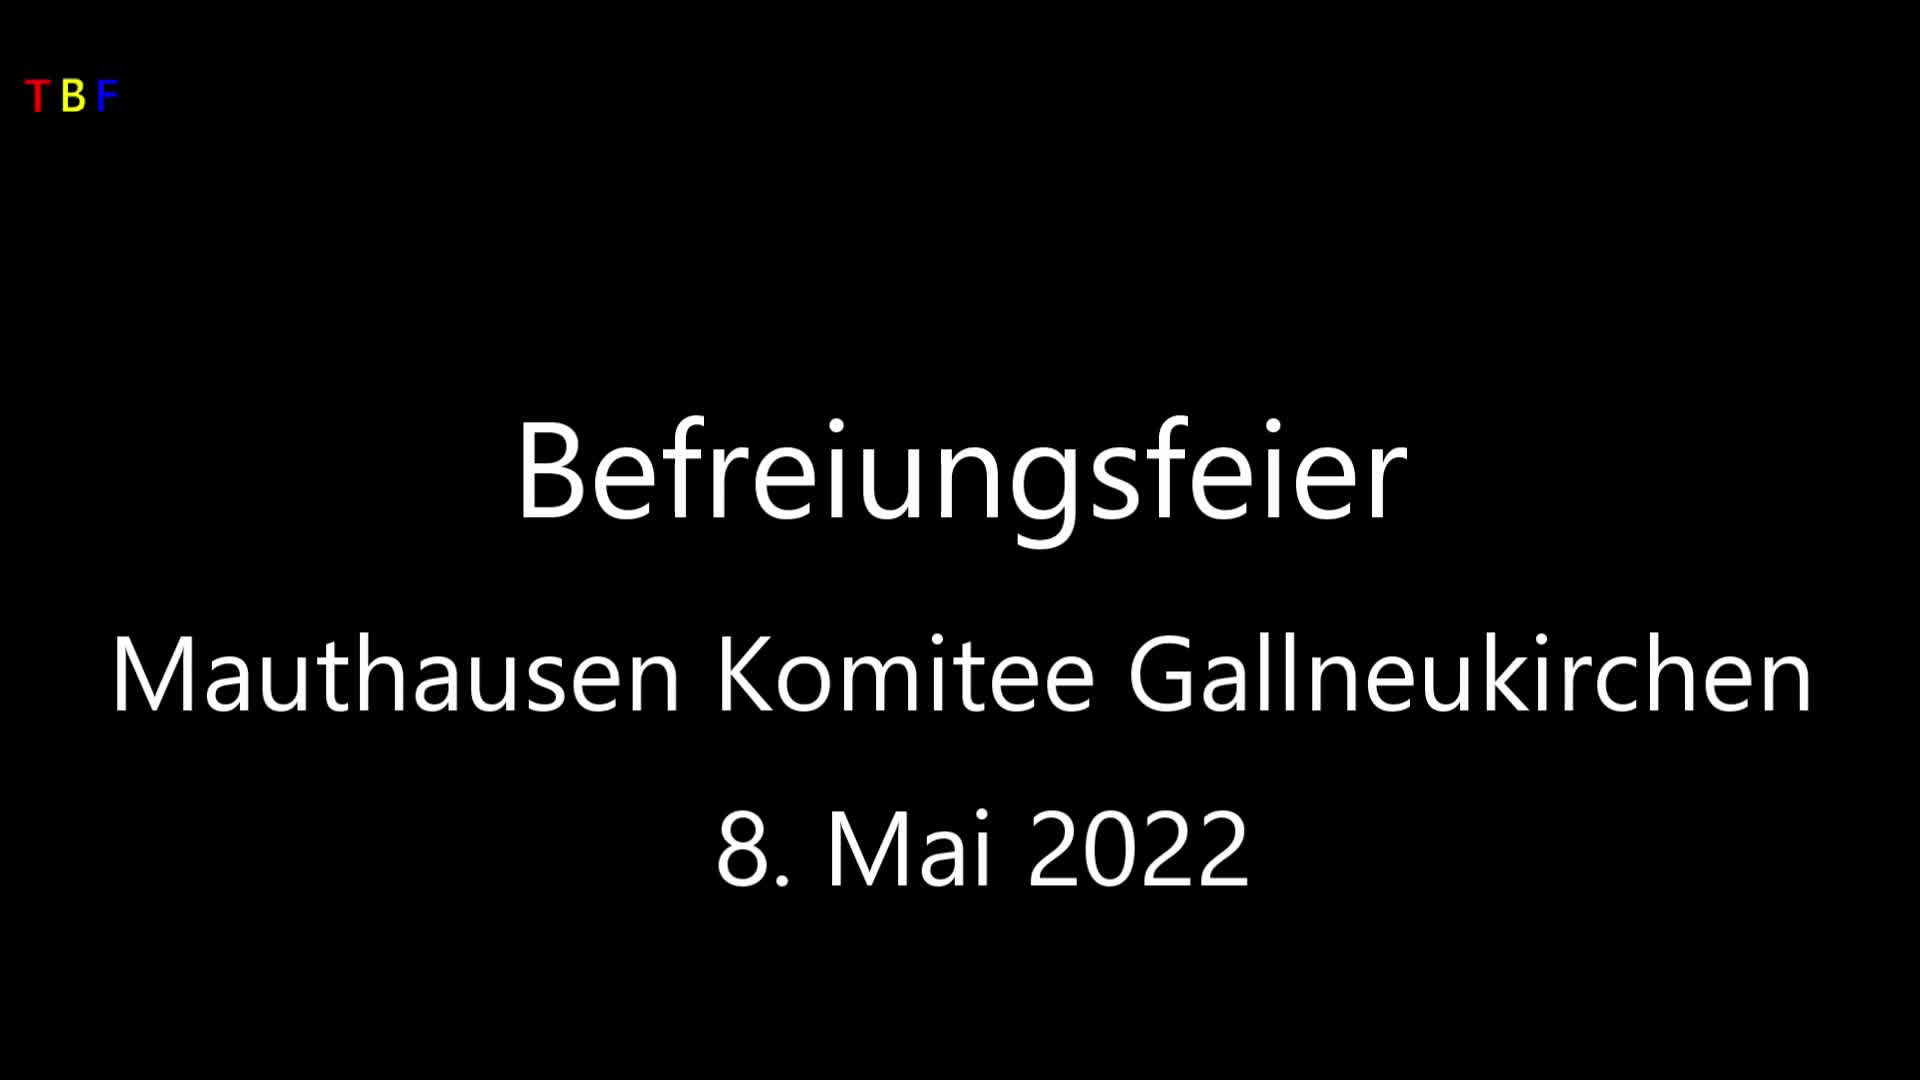 Befreiungsfeier Mauthausen Komitee Gallneukirchen